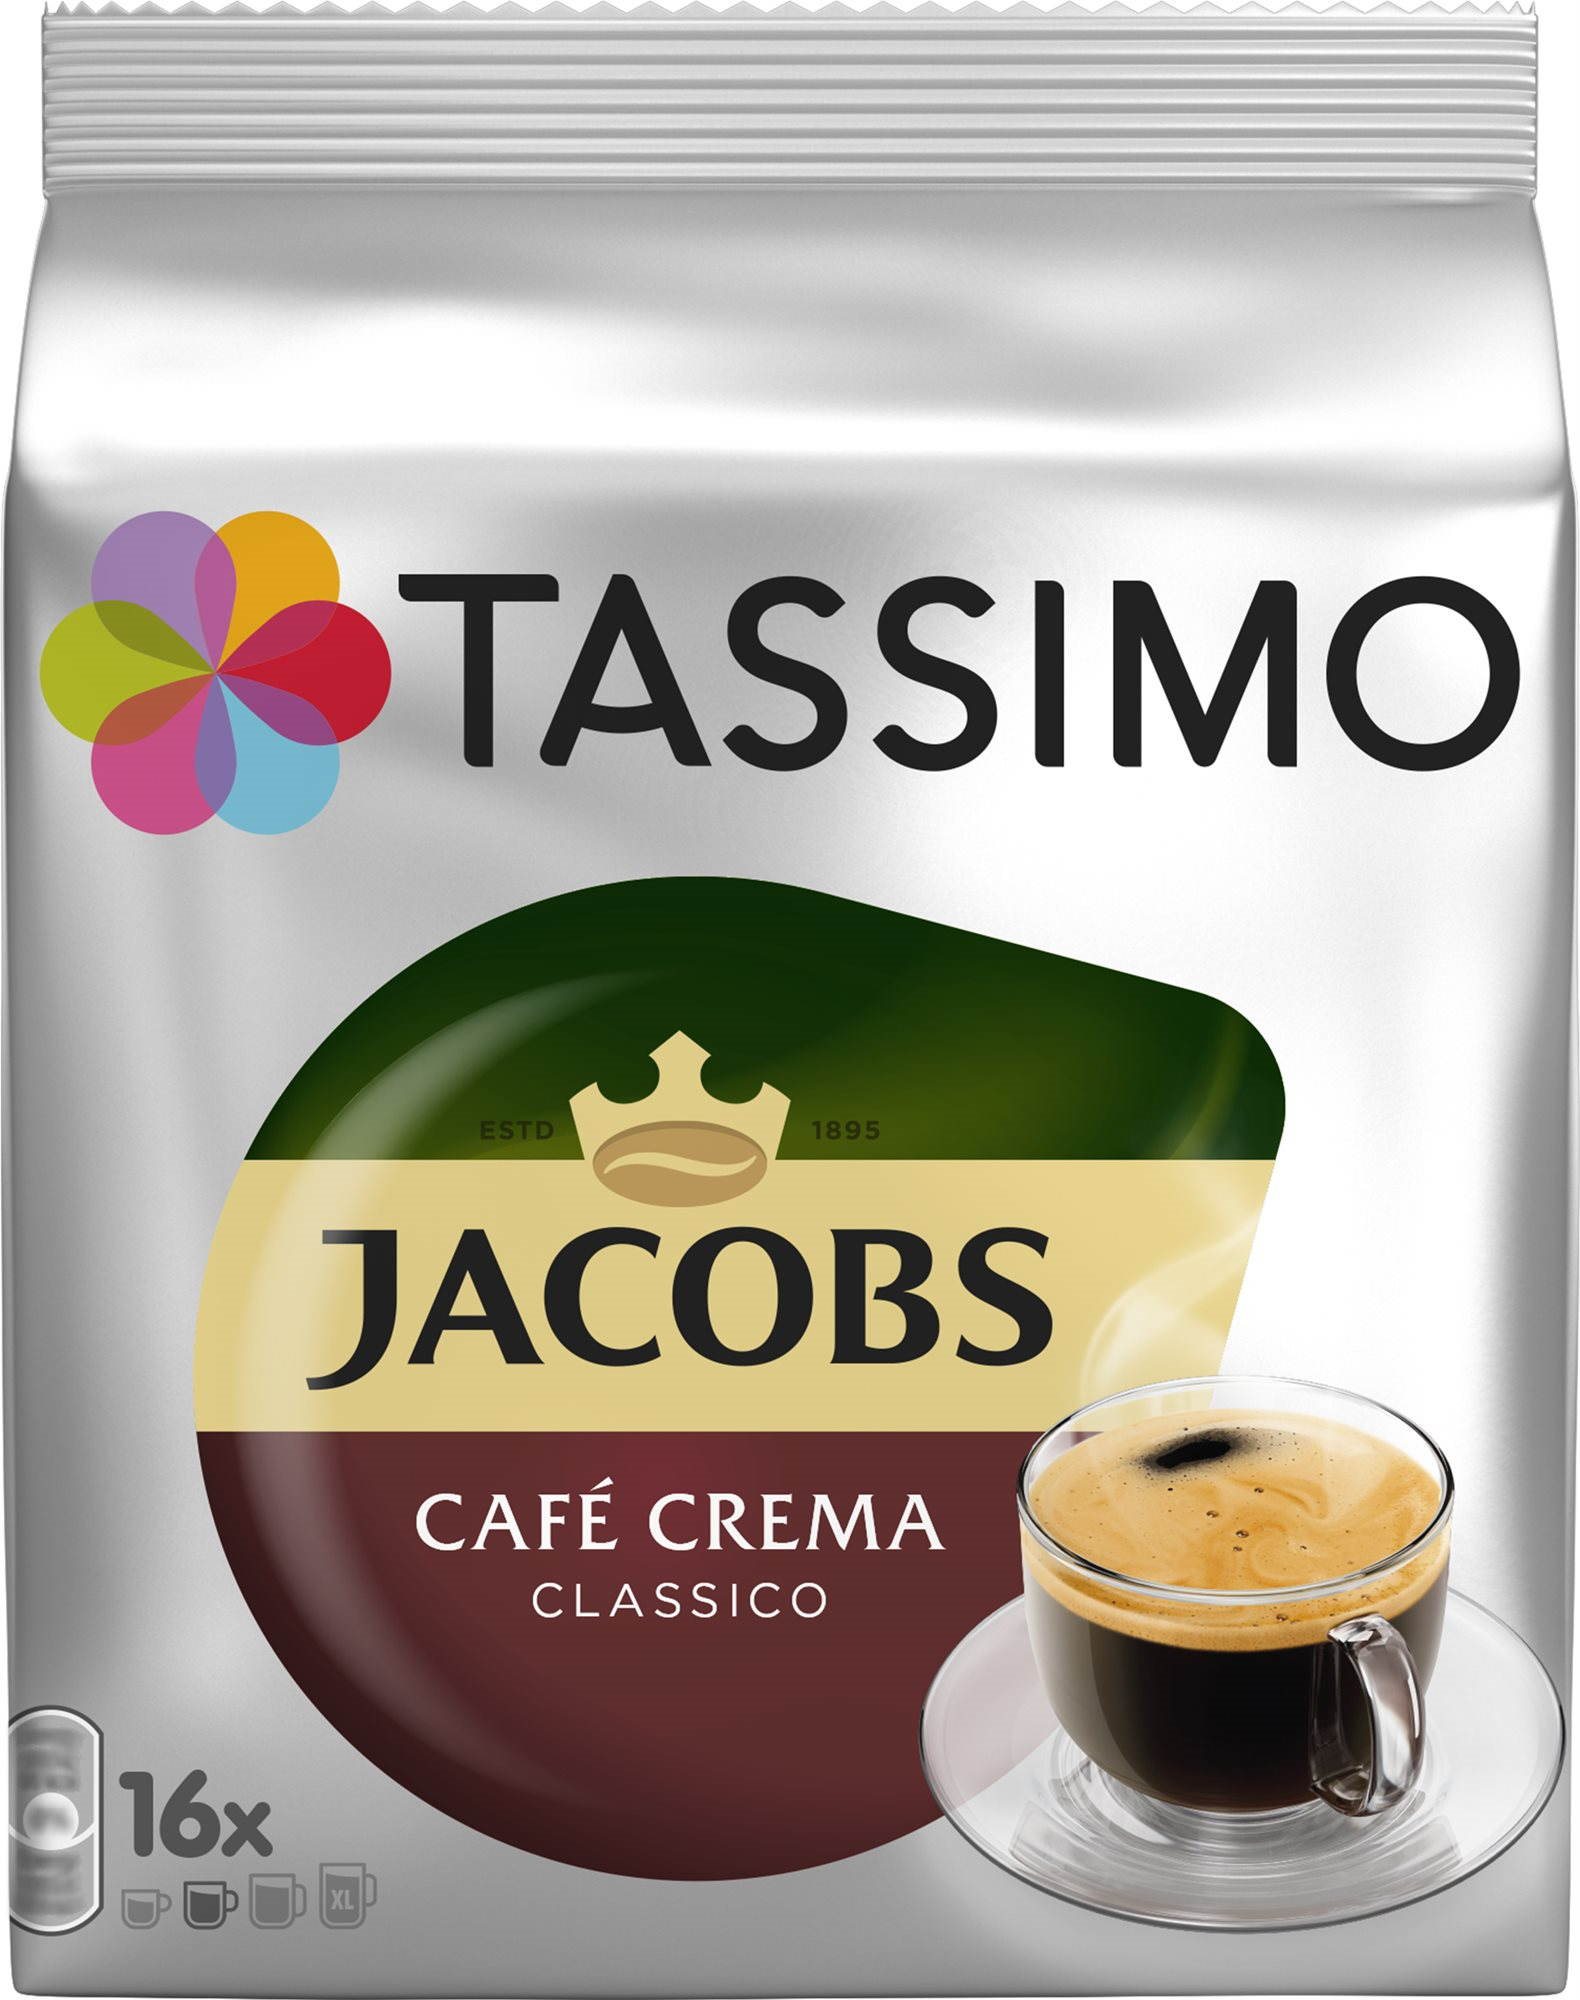 TASSIMO Jacobs Café Crema 16 db